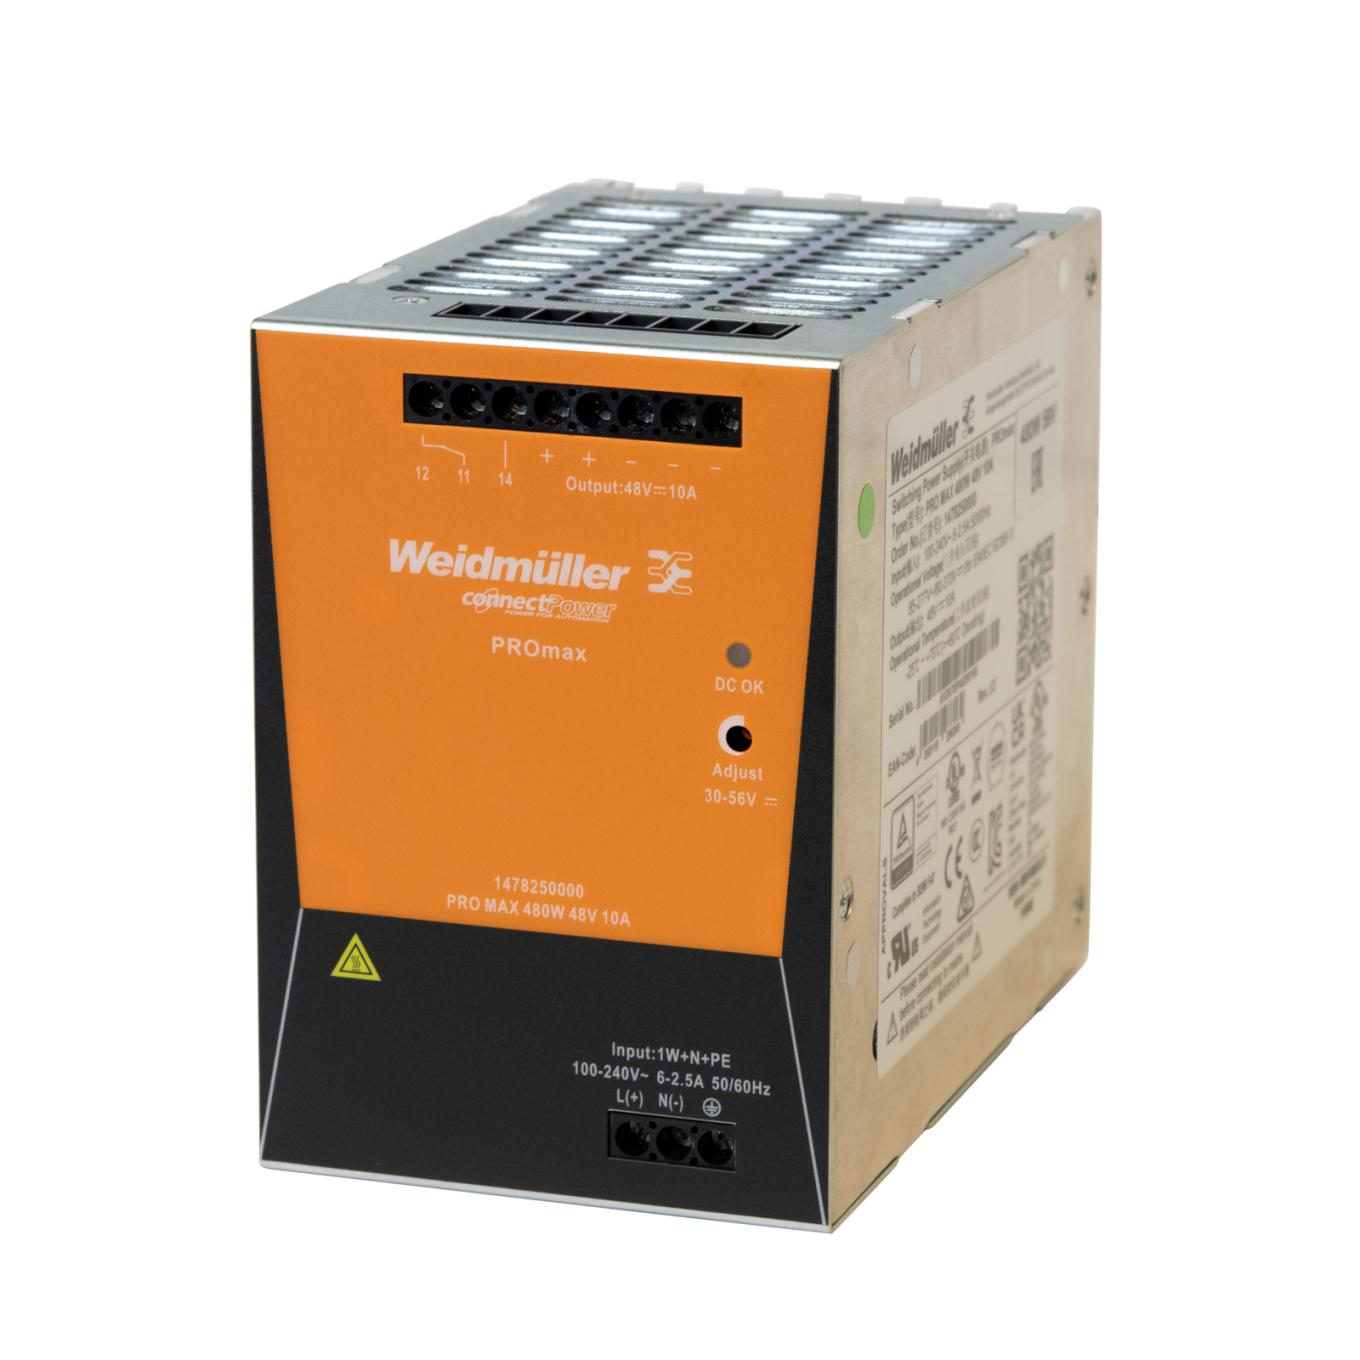 Alimentatore DIN PS56 AXIS, scatola arancione.